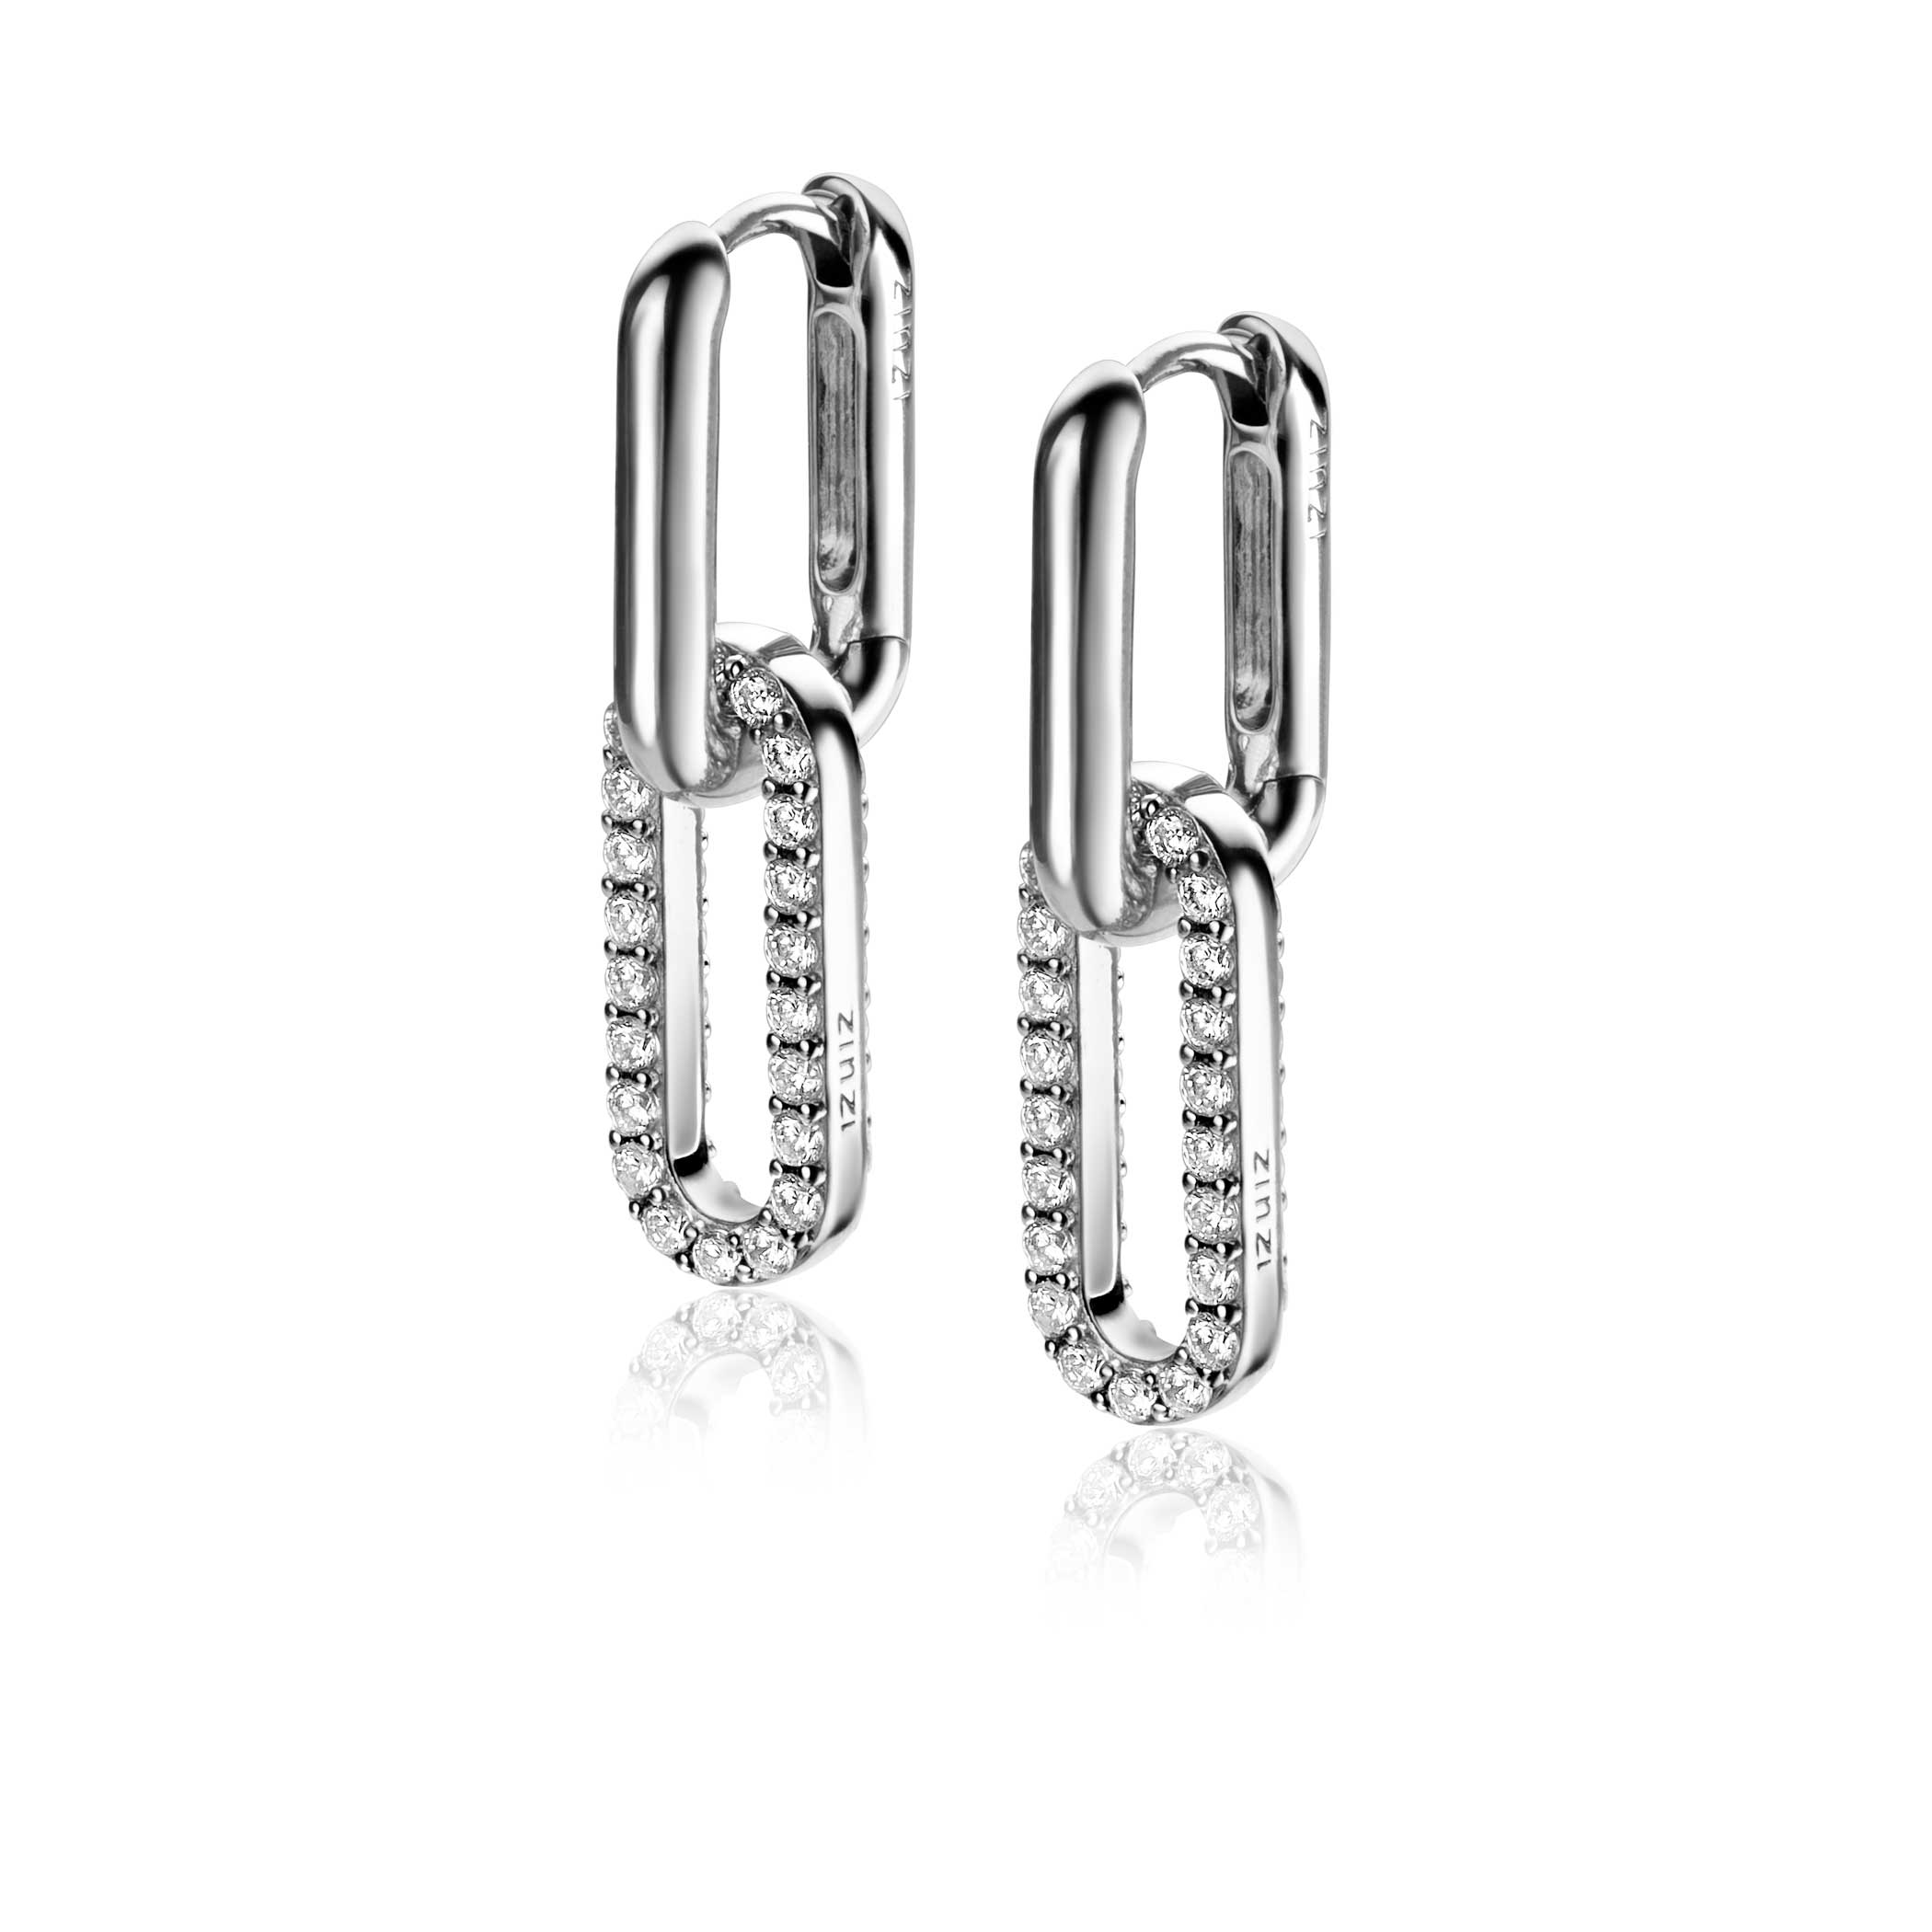 20mm ZINZI Sterling Silver Earrings Pendants Oval White Zirconia ZICH2156 (excl. hoop earrings)